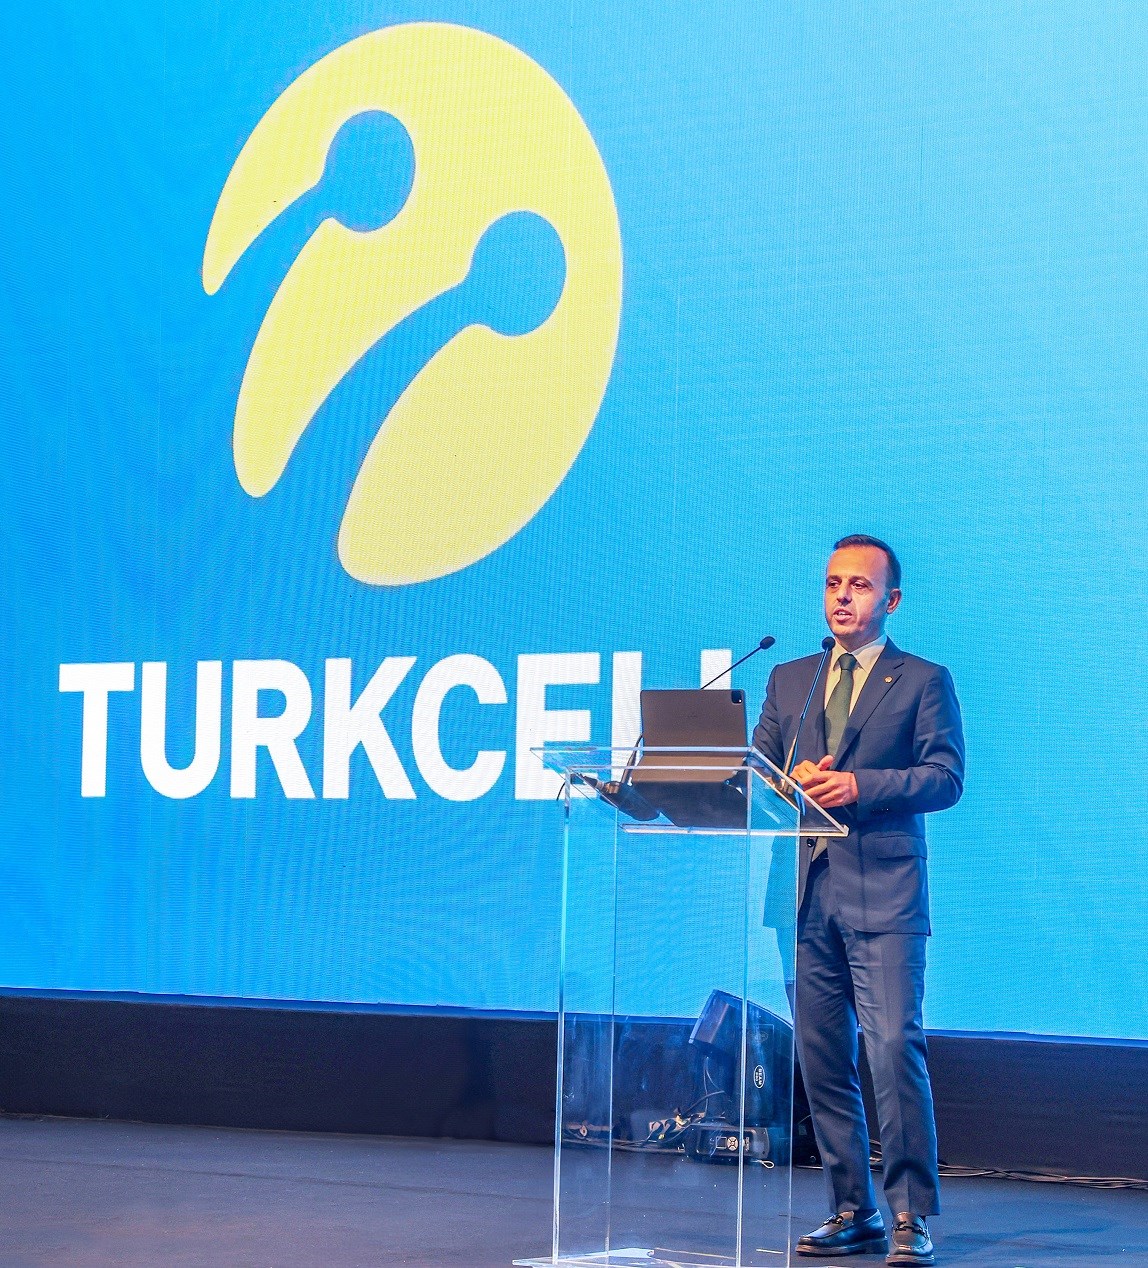 Yeni Turkcell CEO'su Bülent Aksu 11 gün sonra görevden ayrıldı